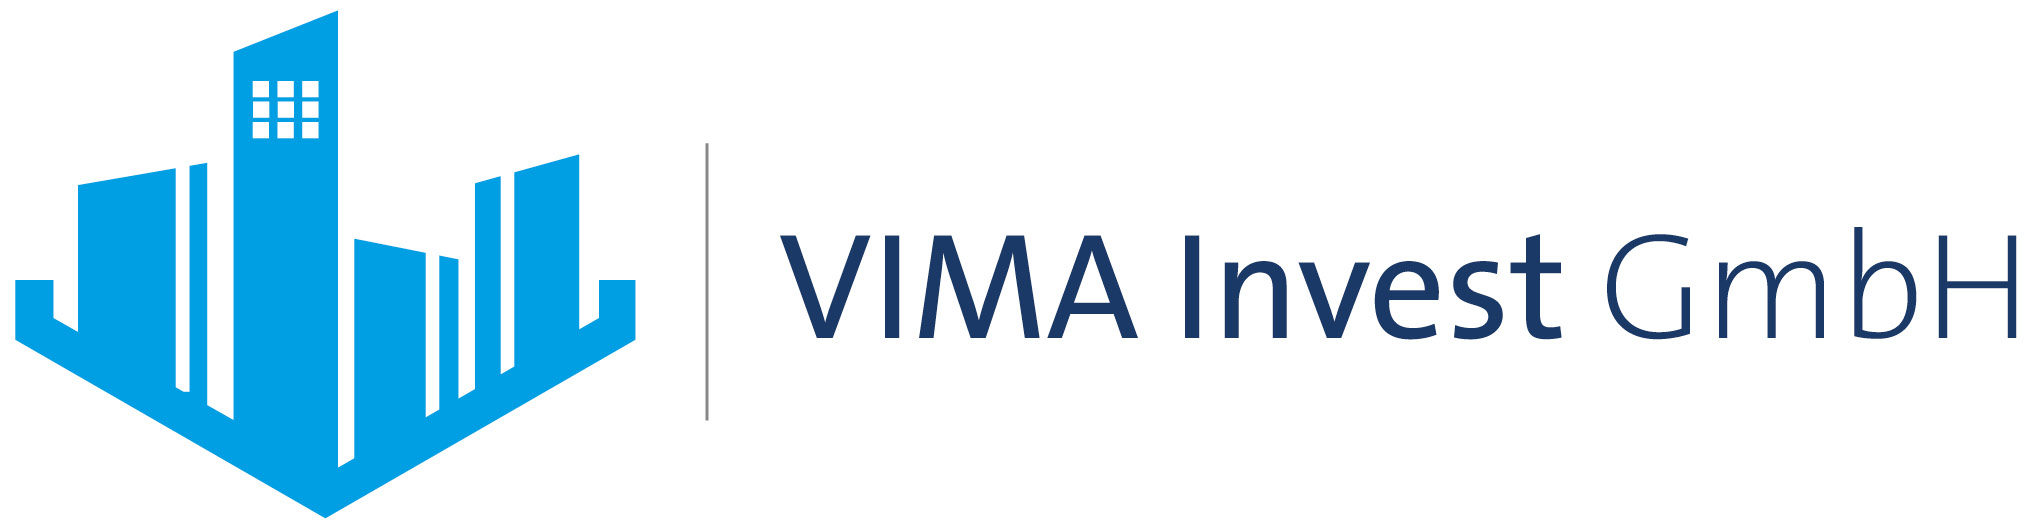 VIMA Invest Logo 4c